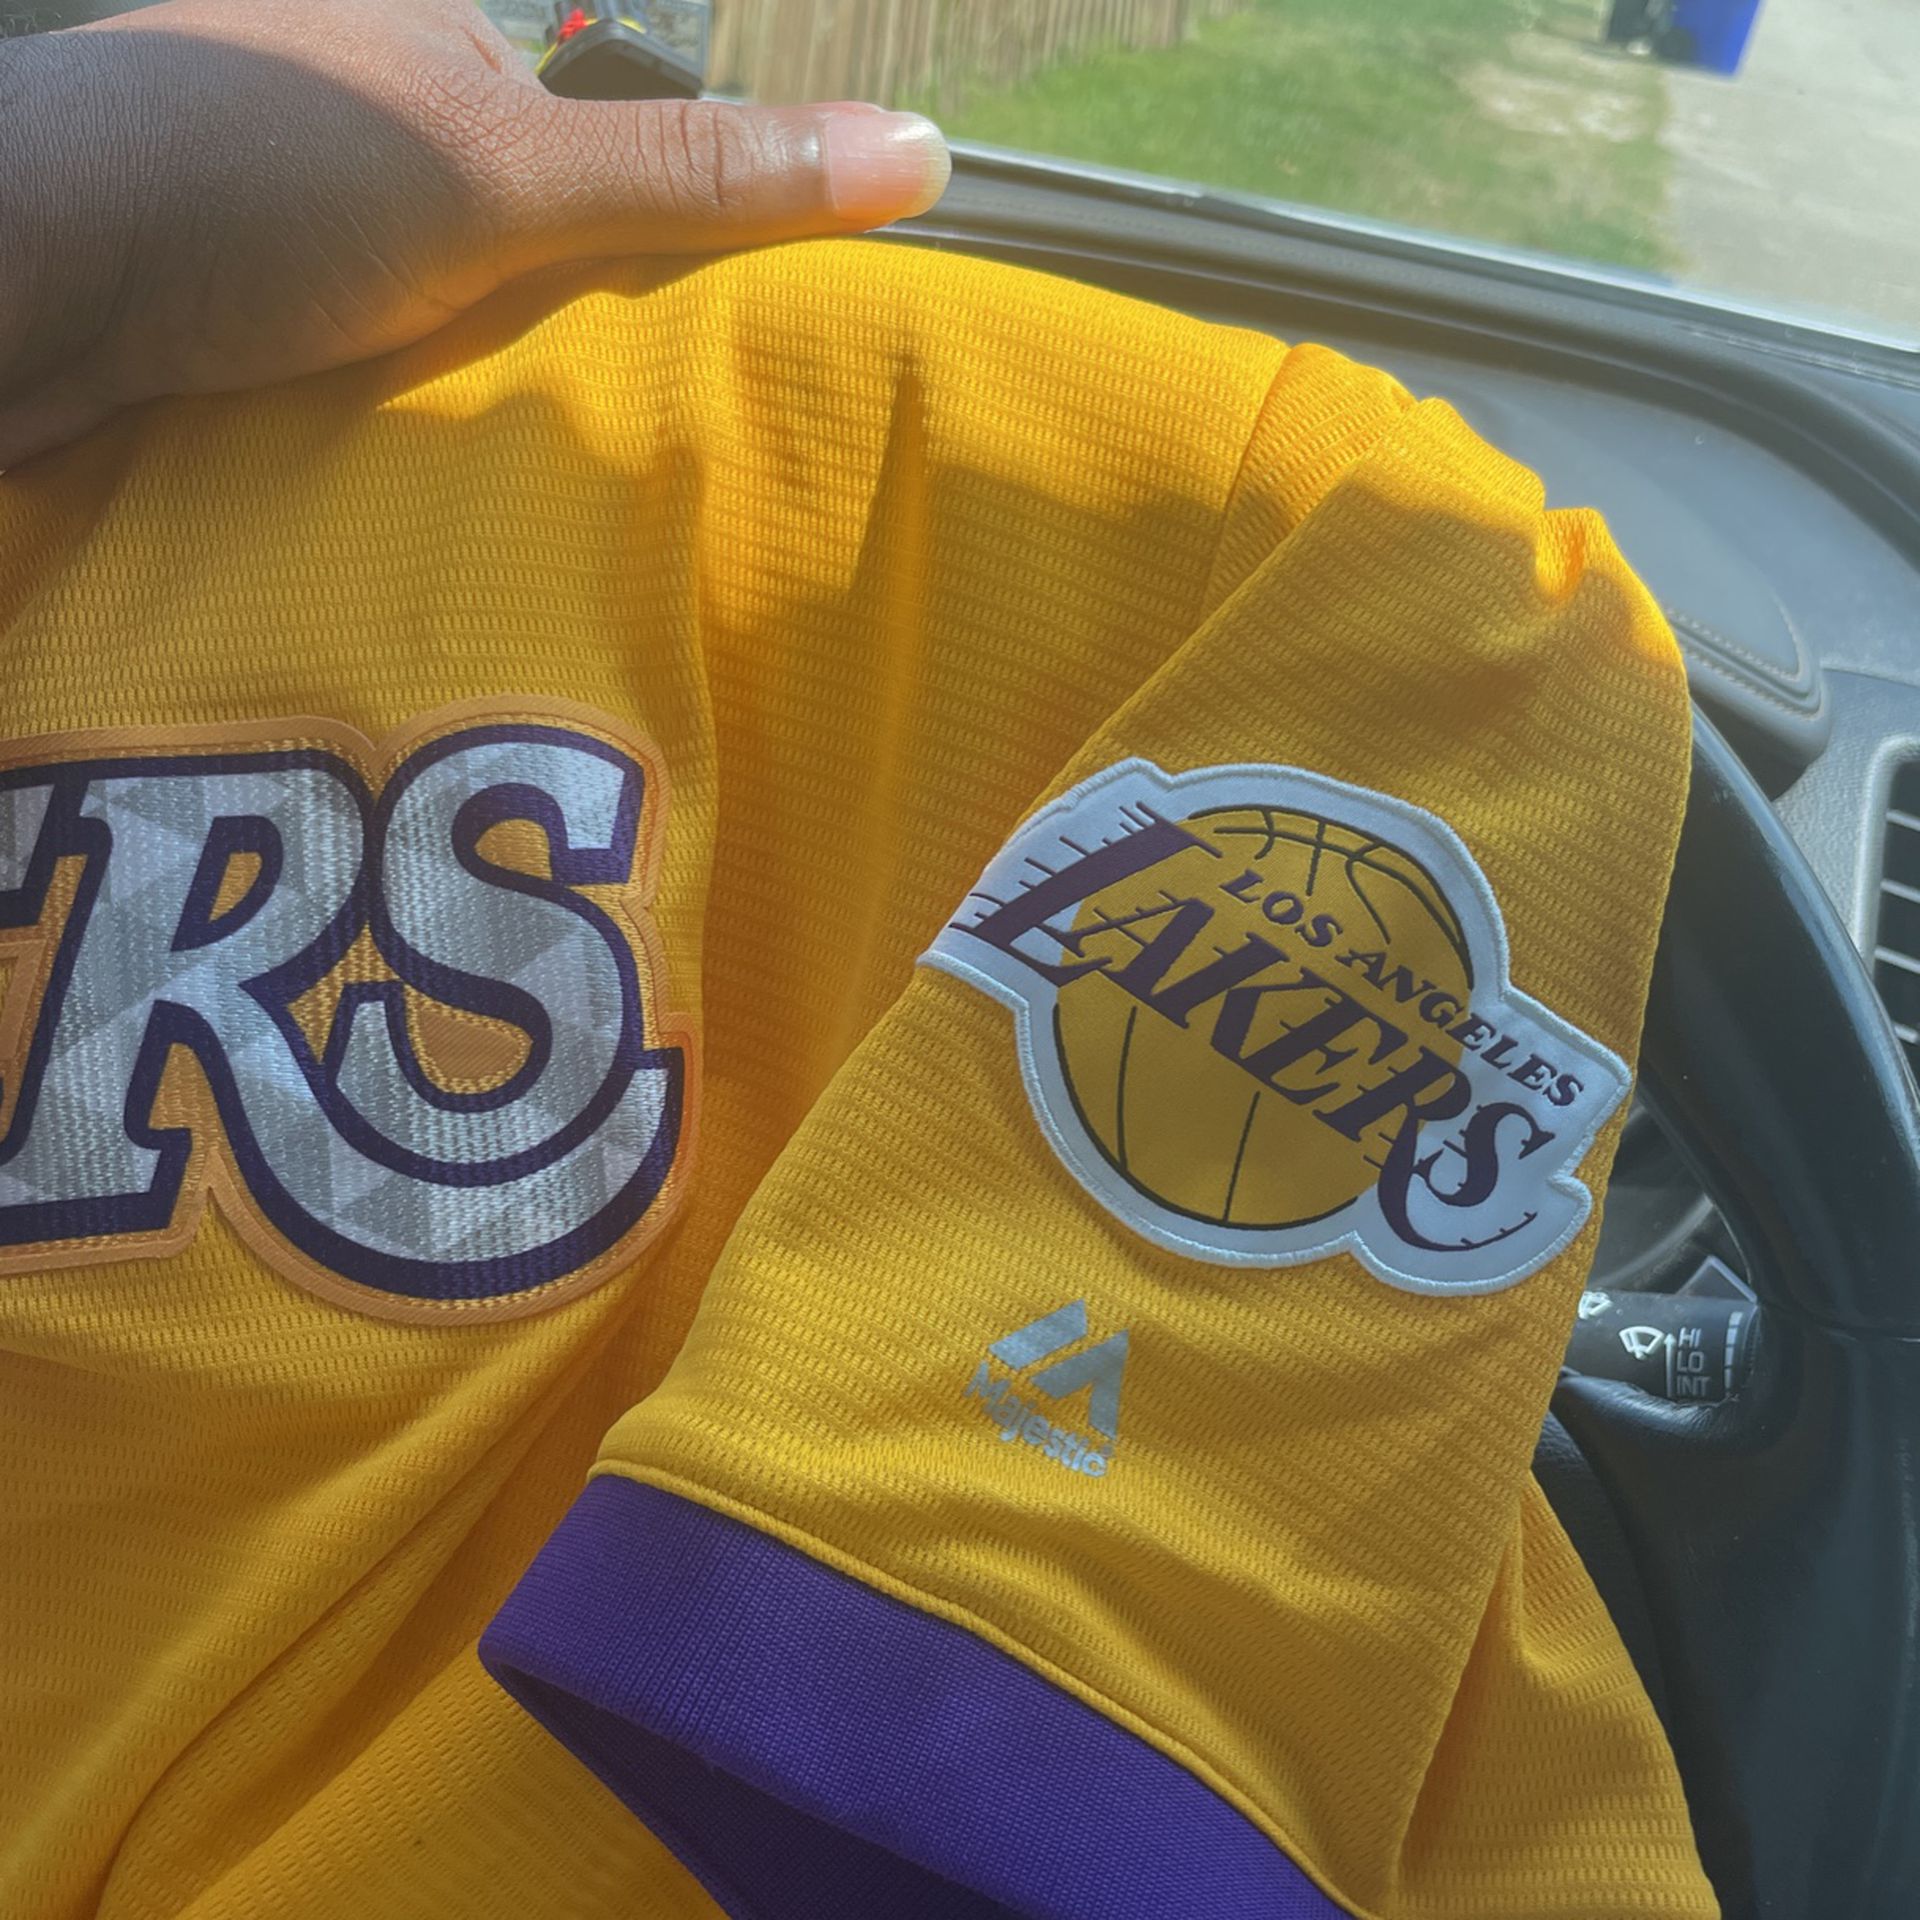 Los Angeles Lakers Fan Jerseys for sale